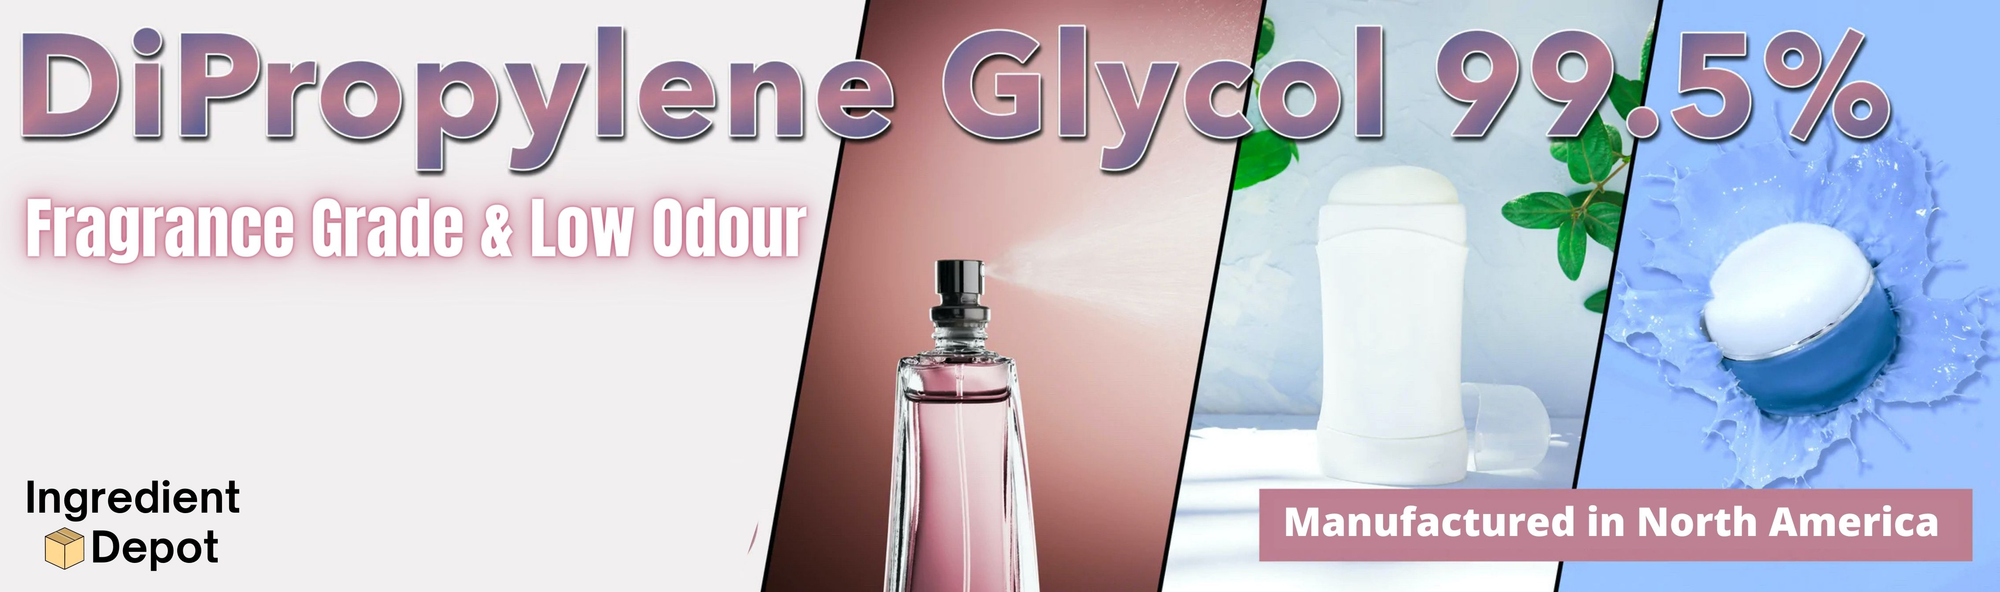 Ingredient Depot DiPropylene Glycol 99.5 Fragrance Grade